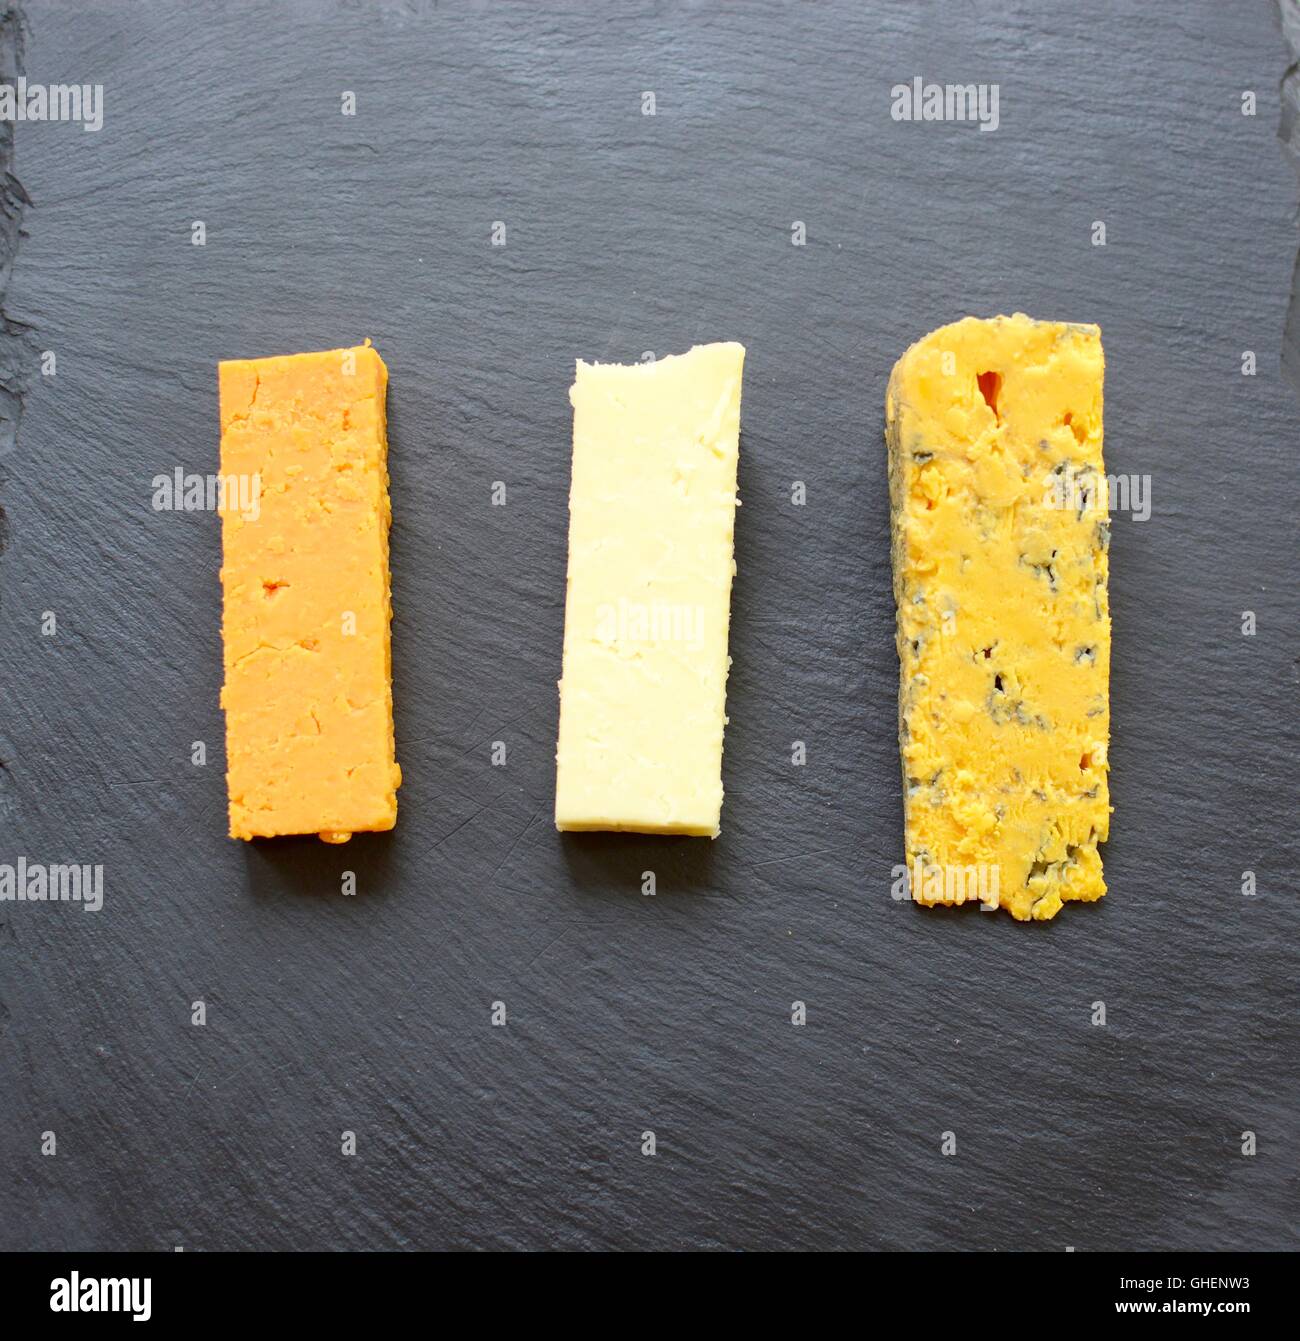 Sélection de trois fromages servi sur ardoise noire Banque D'Images